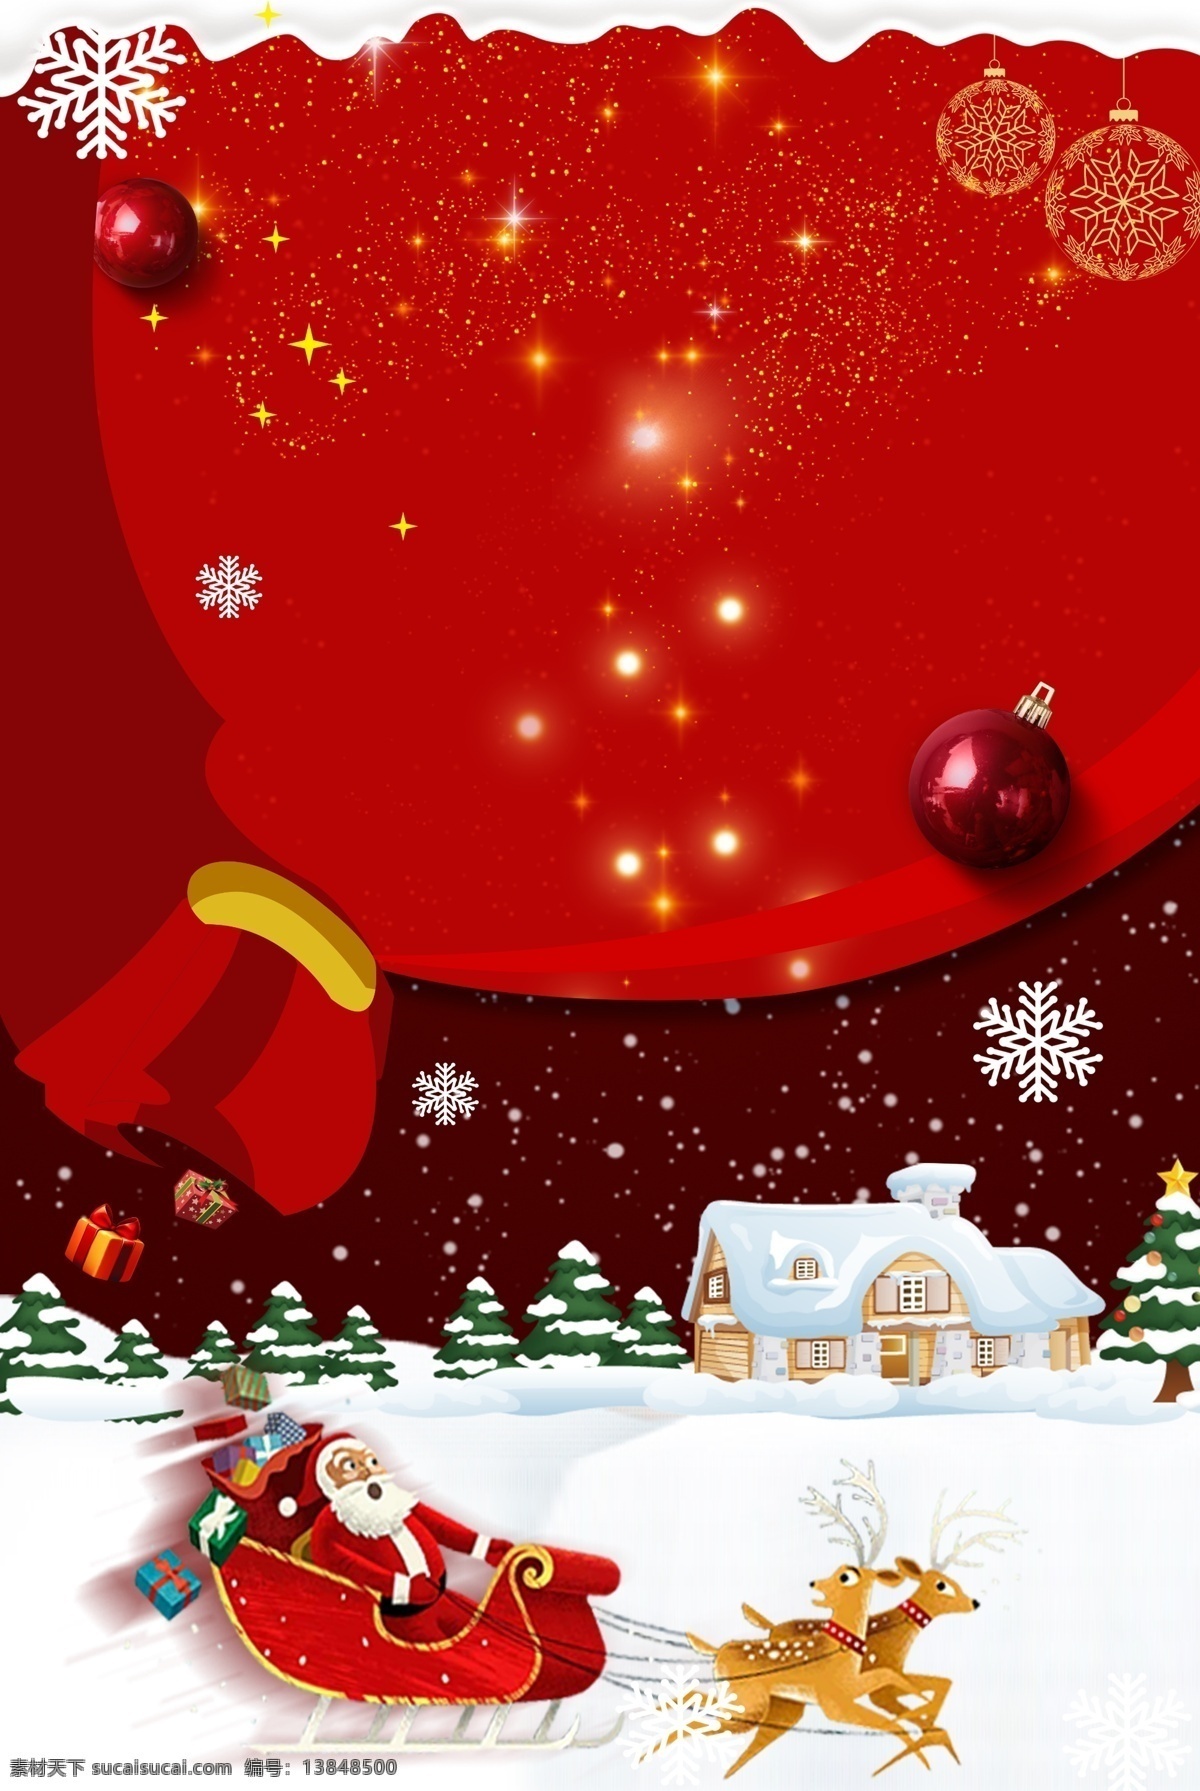 礼品 圣诞节 卡通 手绘 广告 背景 图 圣诞树 圣诞老人 麋鹿 双旦优惠 圣诞活动 雪地 广告背景图